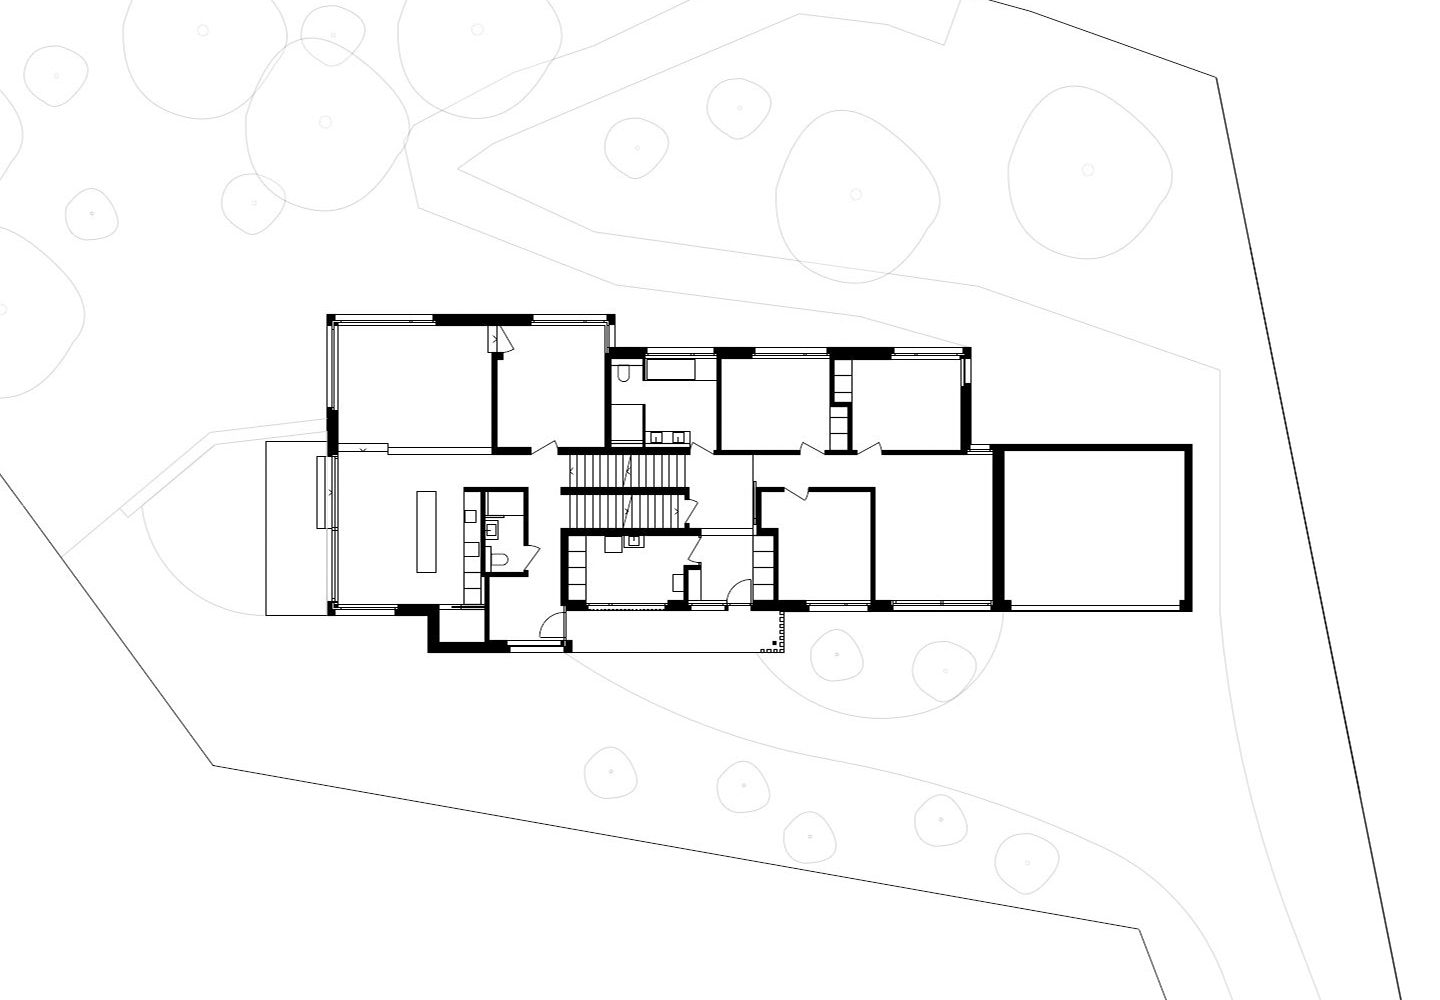 Pfister Klingenfuss Architekten, Haus W, Ennetbaden, Plan Erdgeschoss